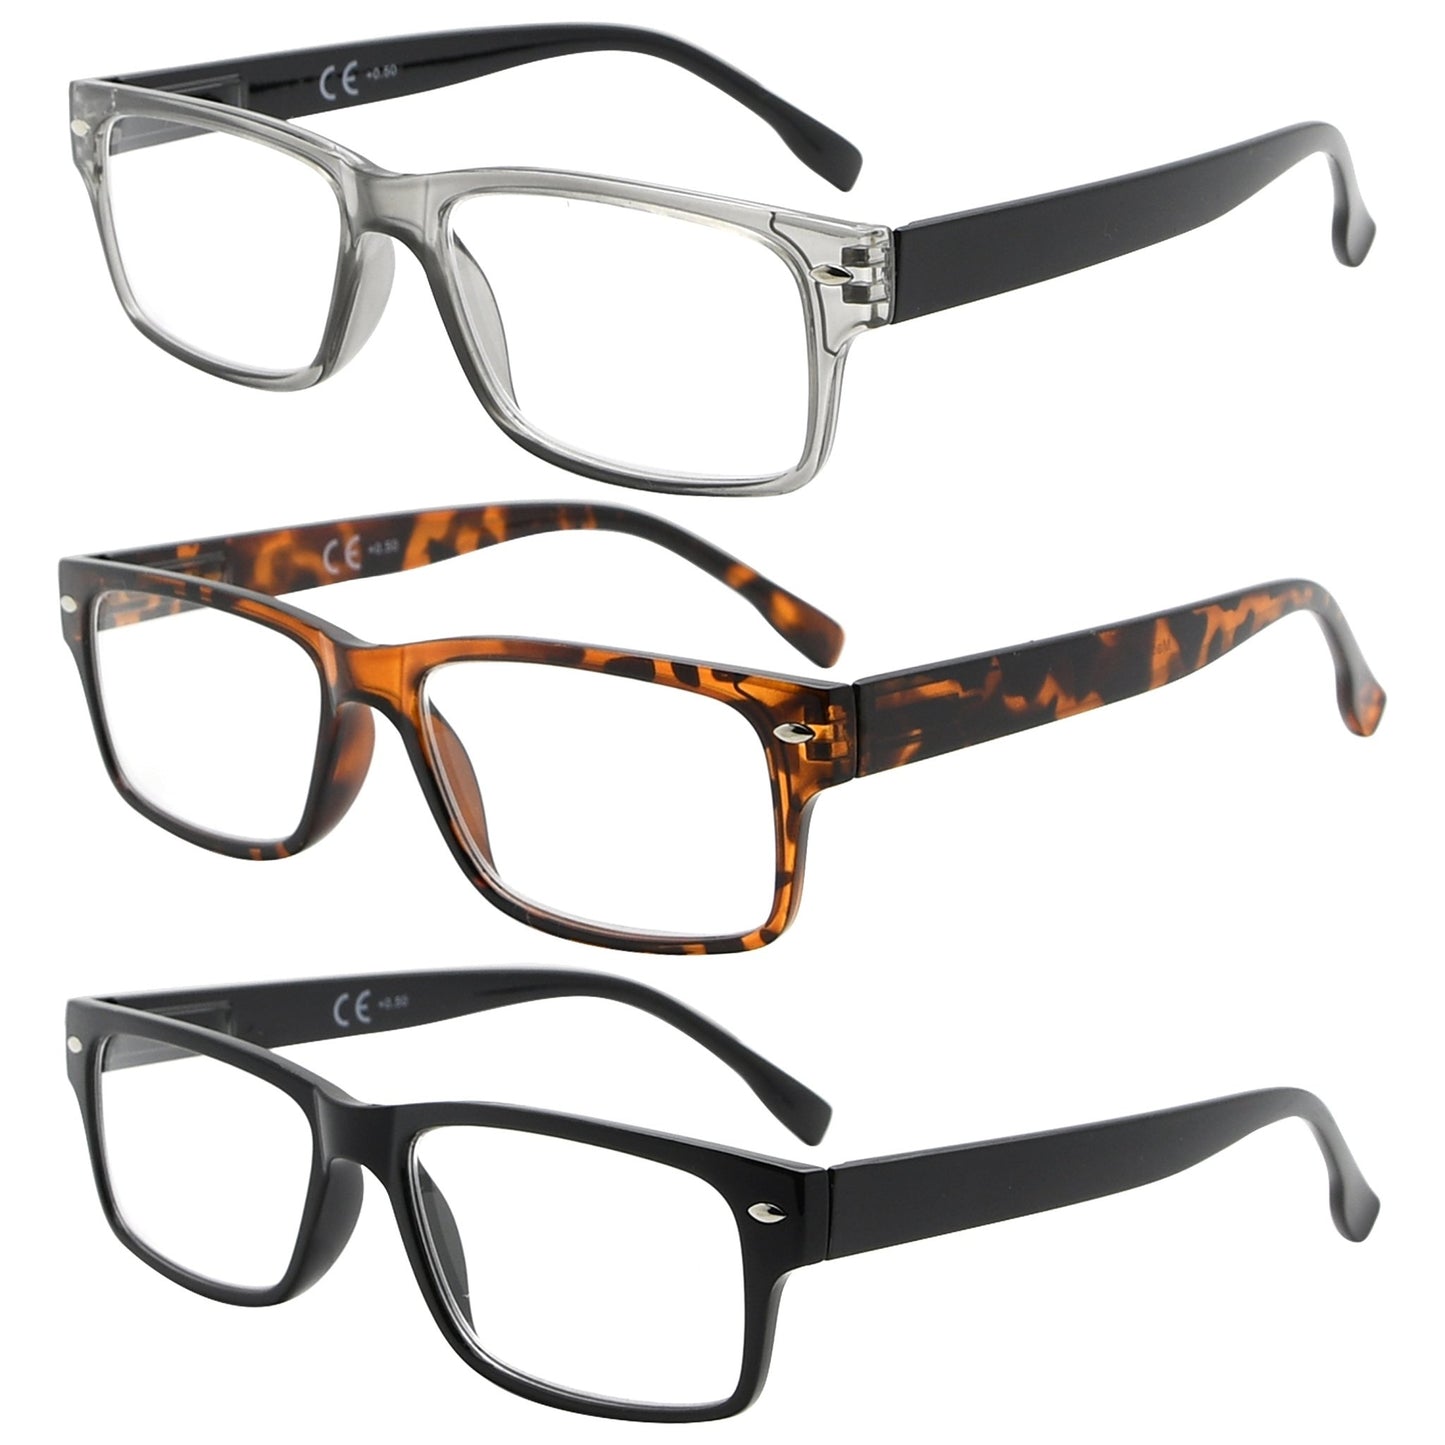 3 Pack Reading Glasses Rectangle Readers for Women Men R108